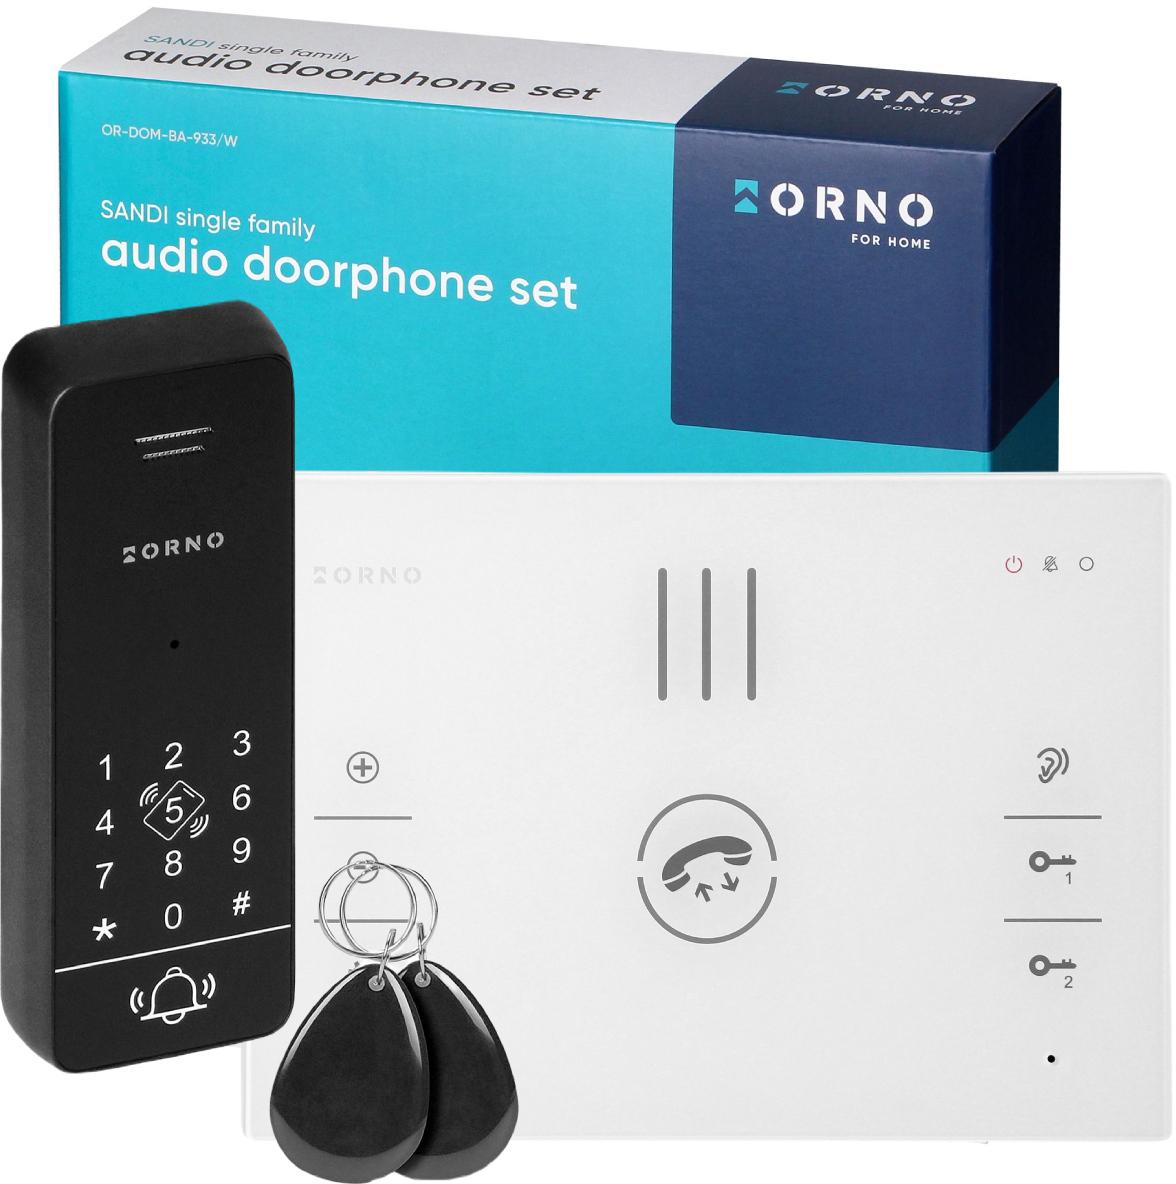 Jednorodzinny zestaw domofonowy z szyfratorem Orno SANDI OR-DOM-BA-933/W - najważniejsze cechy: